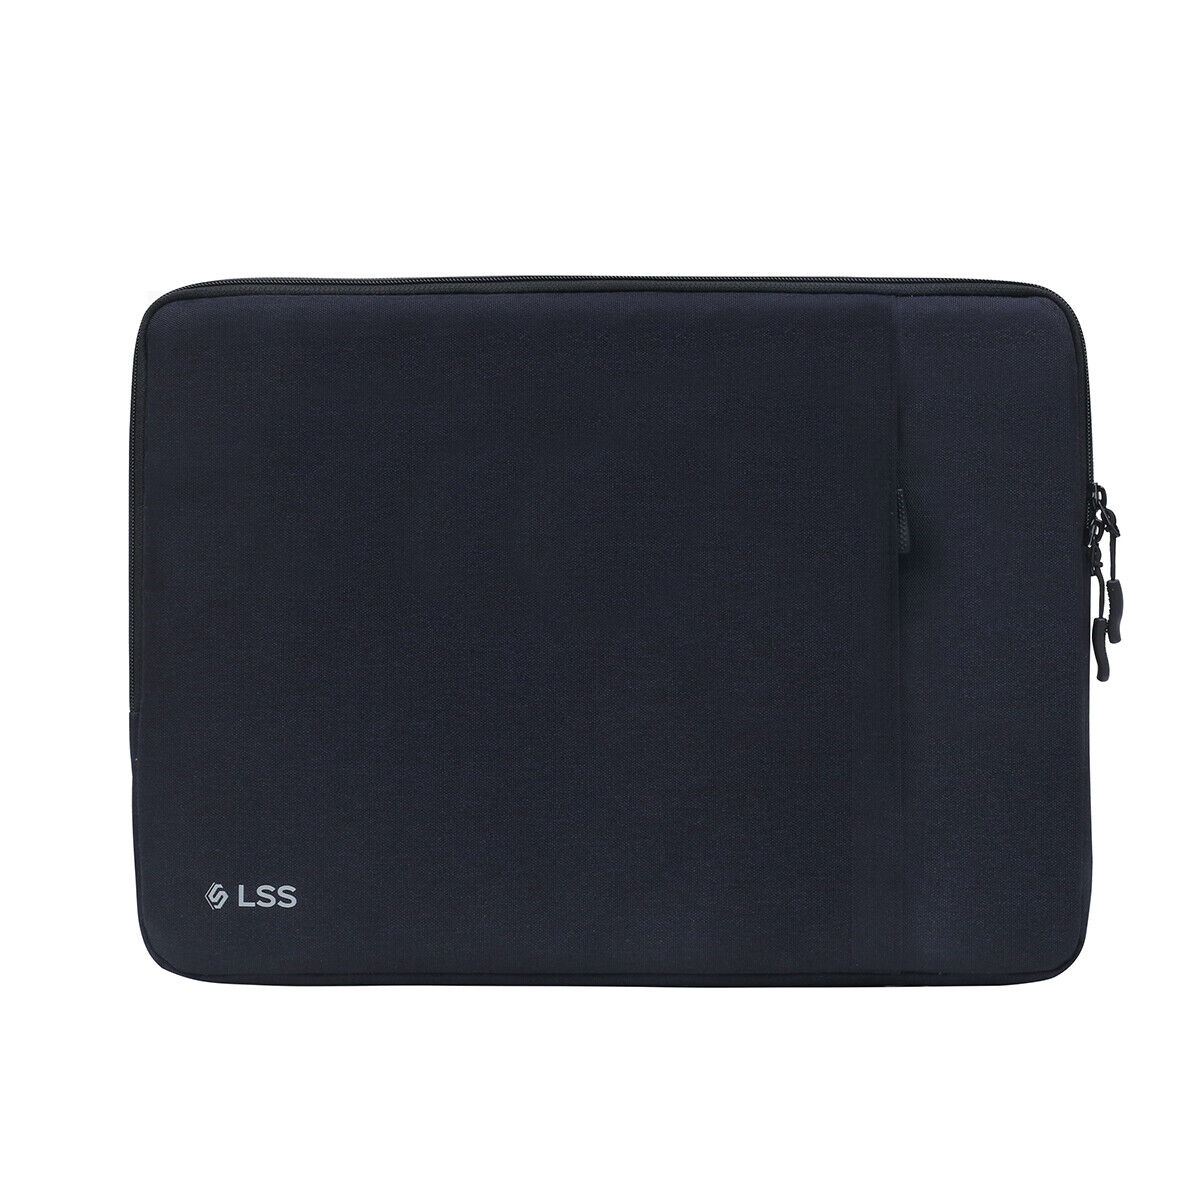 Laptop Sleeve Case Protective Handbag Notebook Macbook Shoulder Carry Bag Pocket